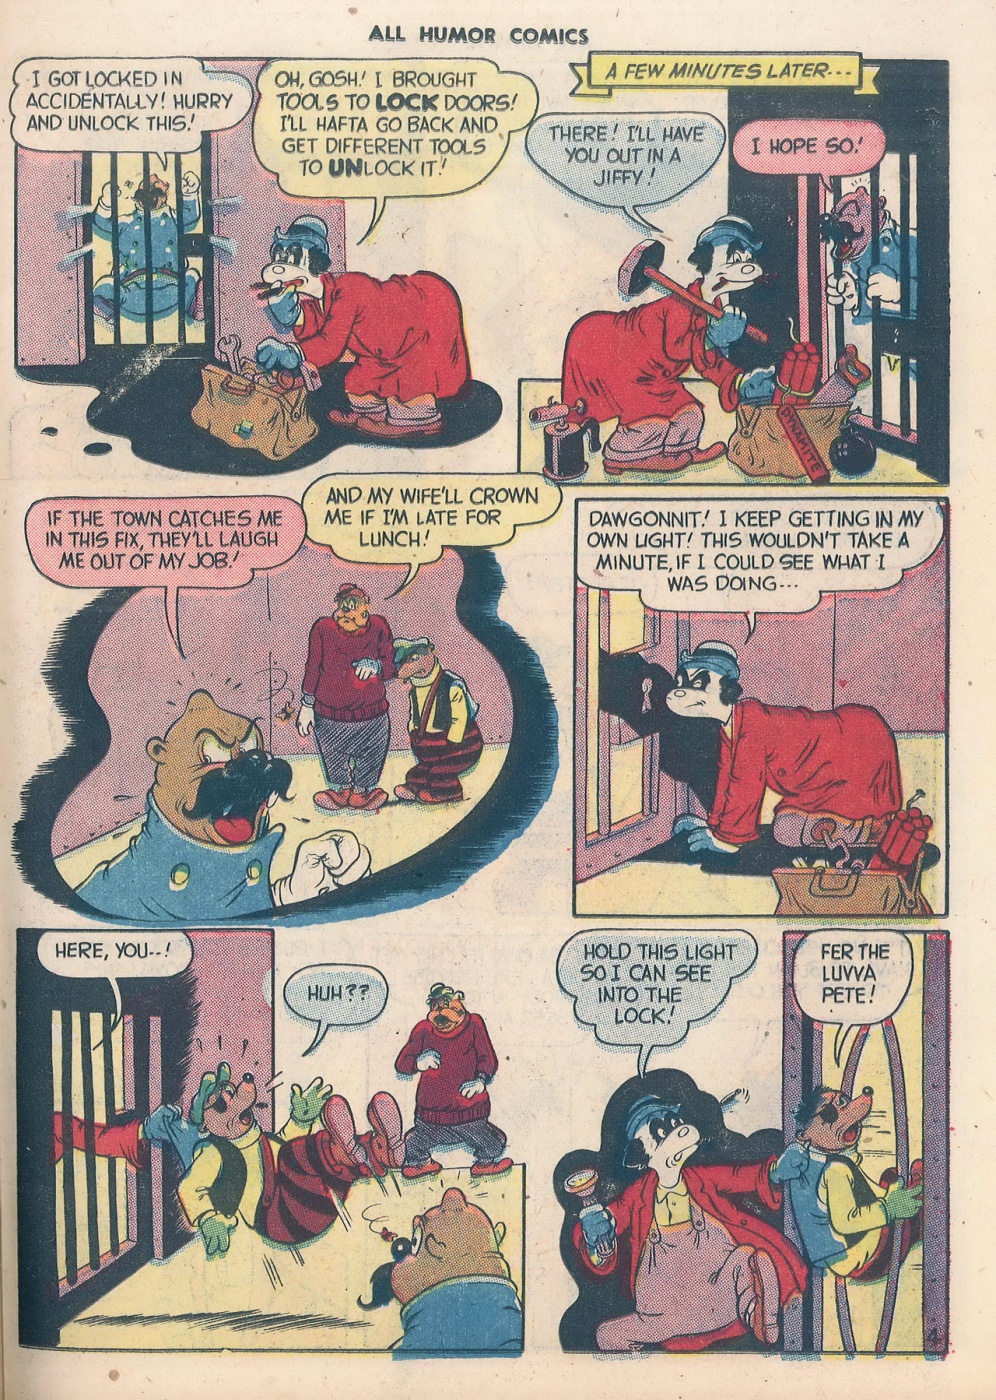 All-Humor-Comics d (35)